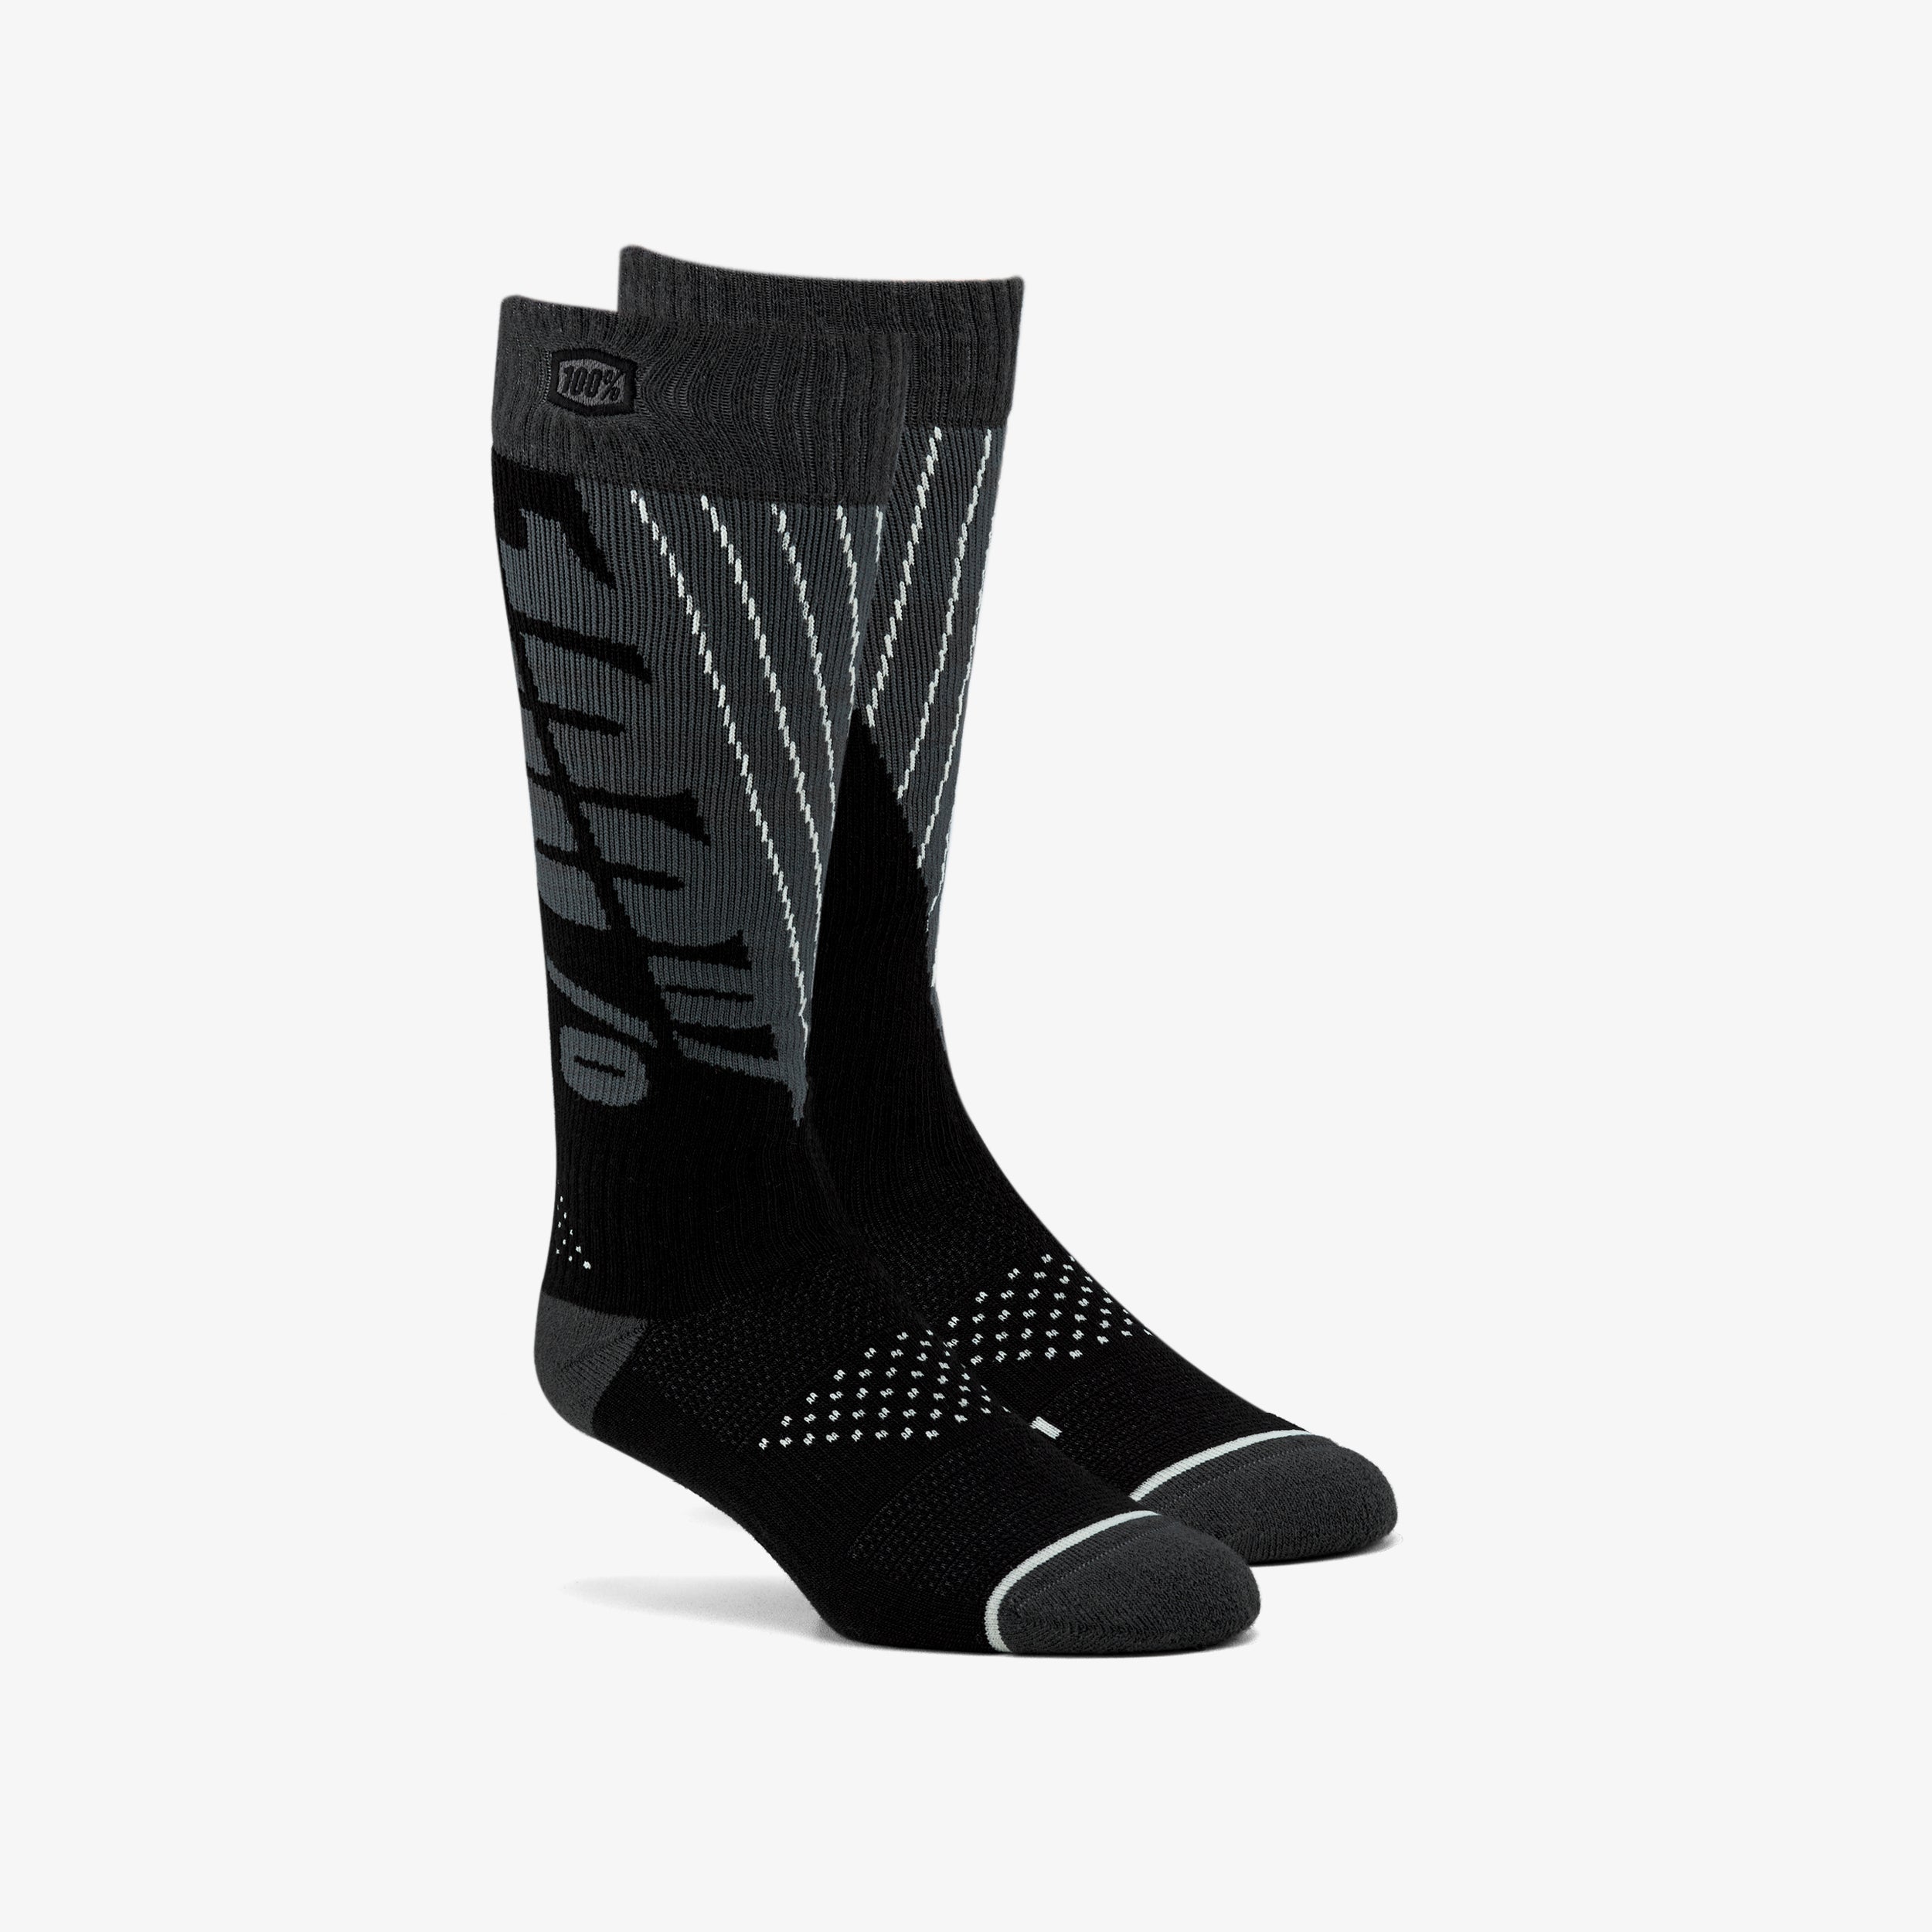 TORQUE Comfort Moto Socks Black/Steel Grey – 100%